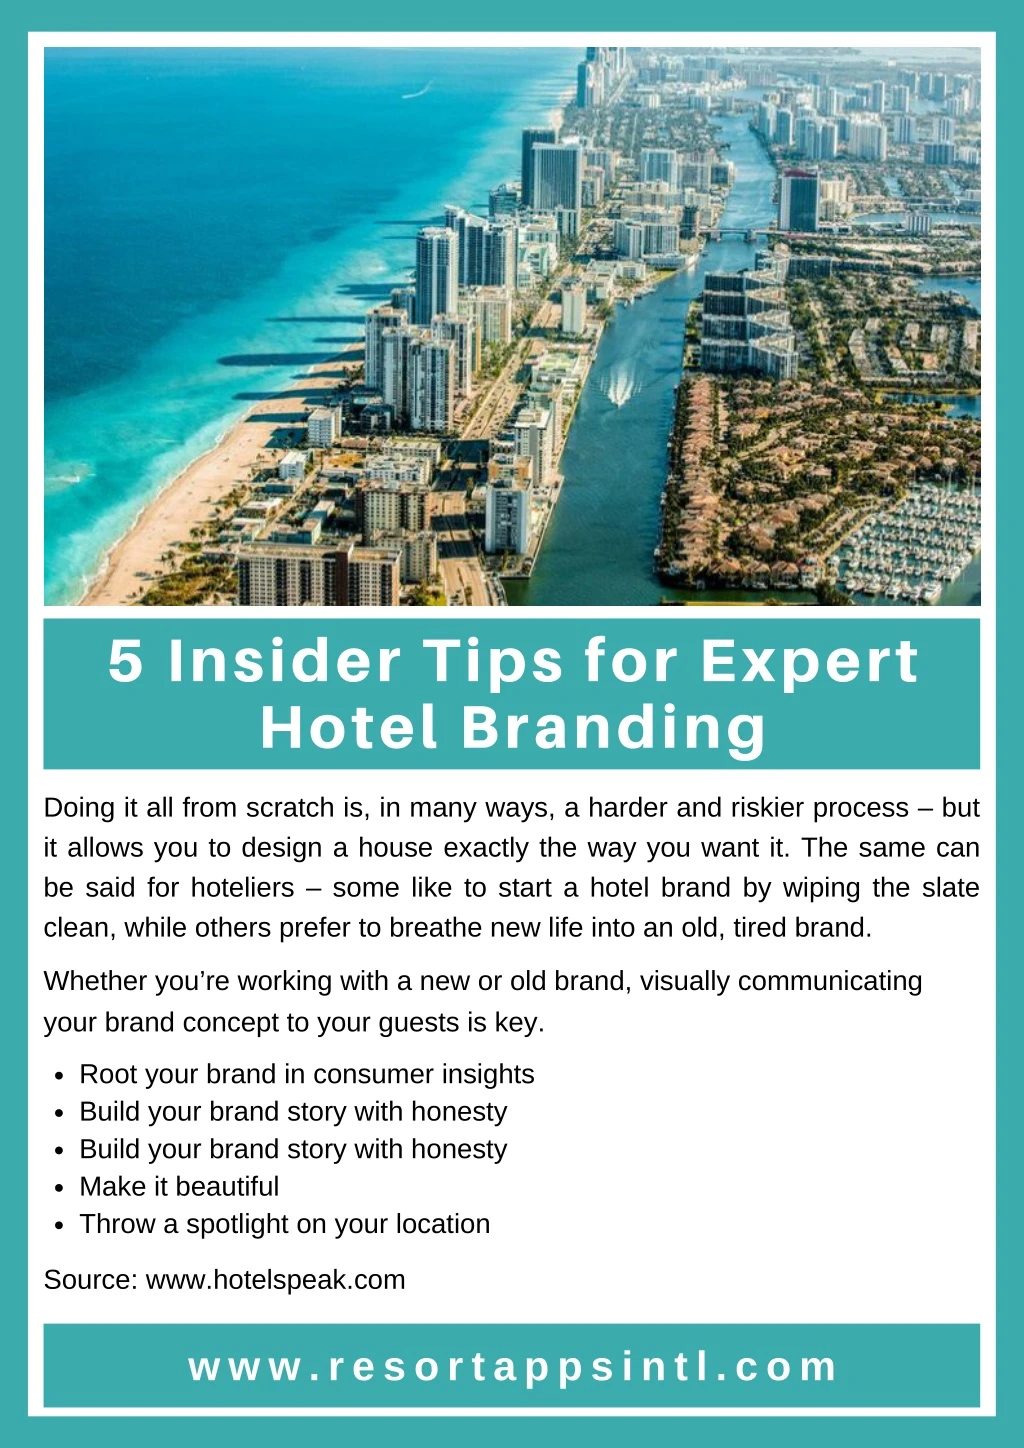 5 insider tips for expert hotel branding